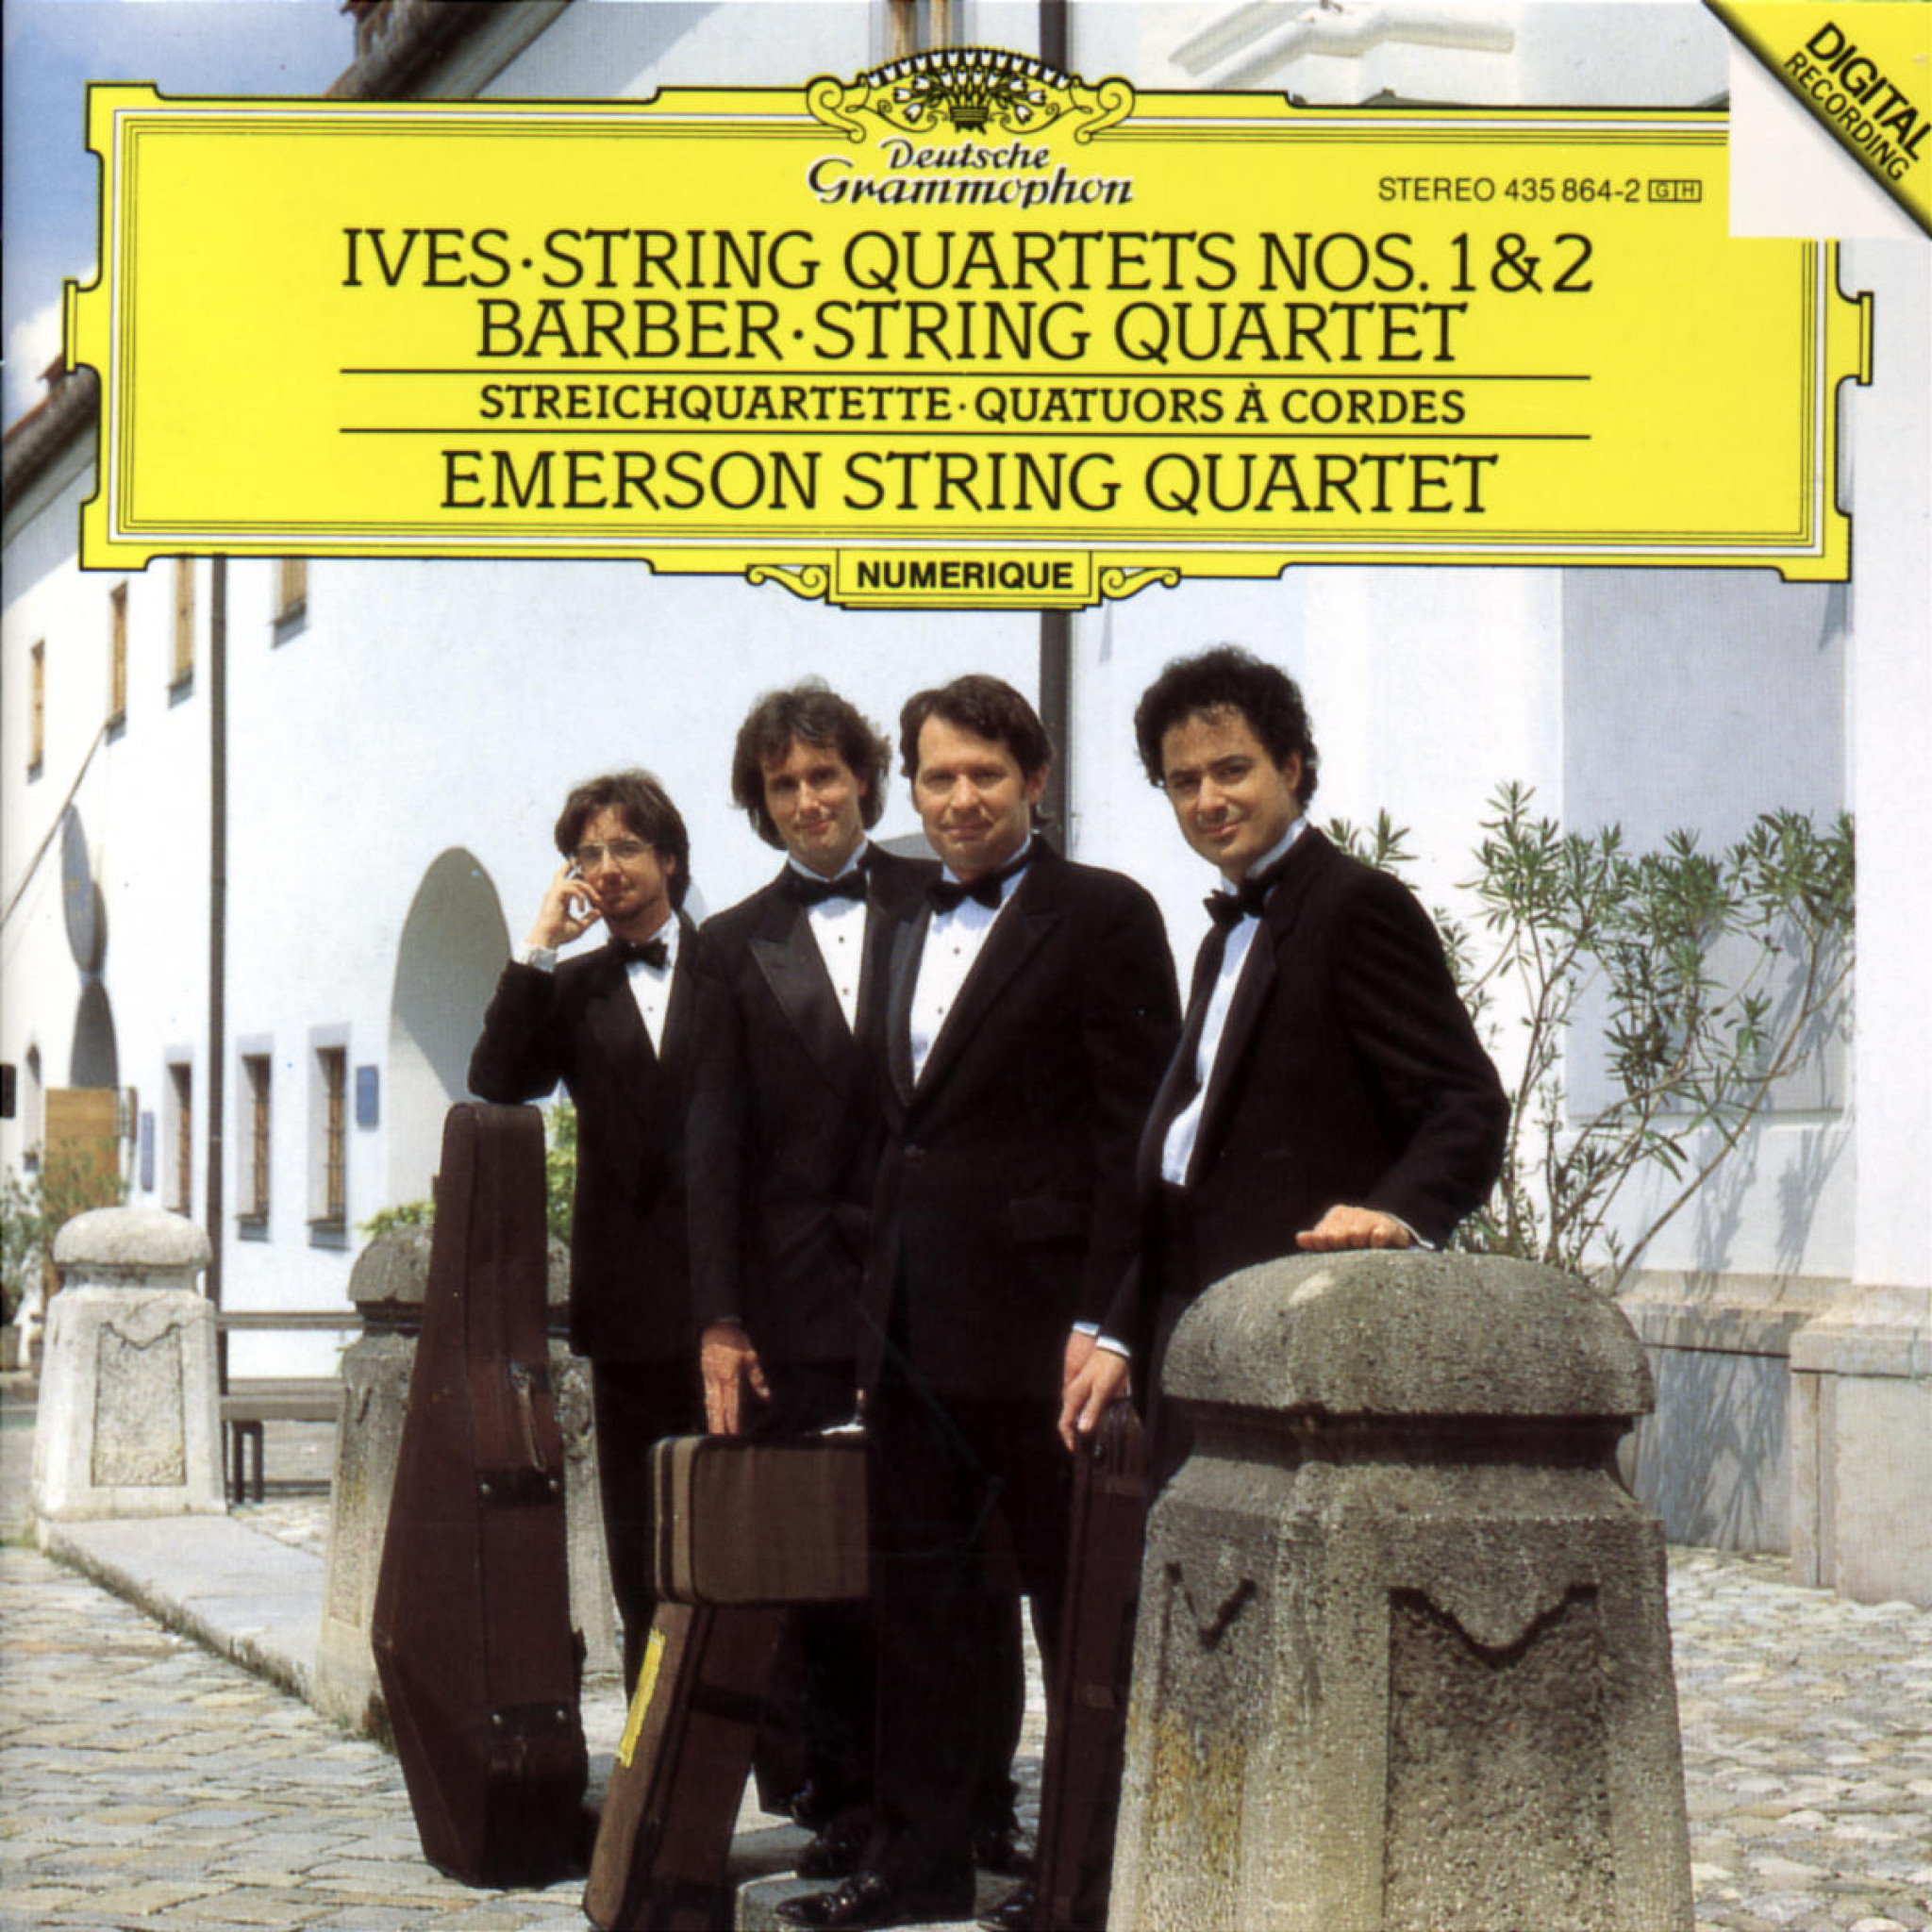 Ives: String Quartets Nos. 1 & 2 / Barber: String Quartet 0028943586423